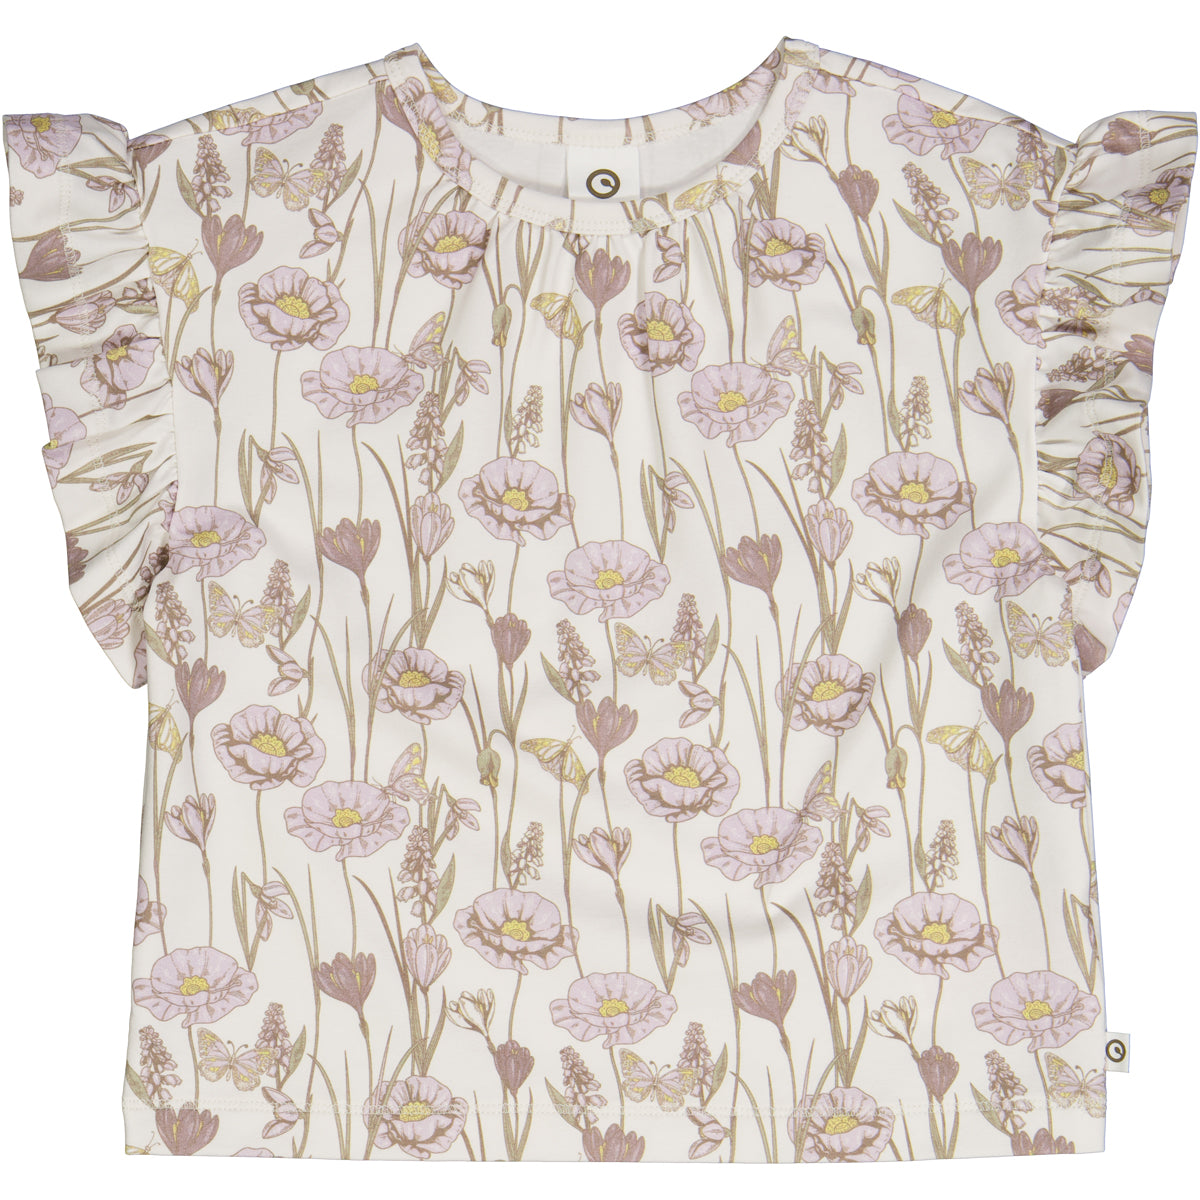 Crocus T-Shirt - Balsam cream/Orchid/Corn